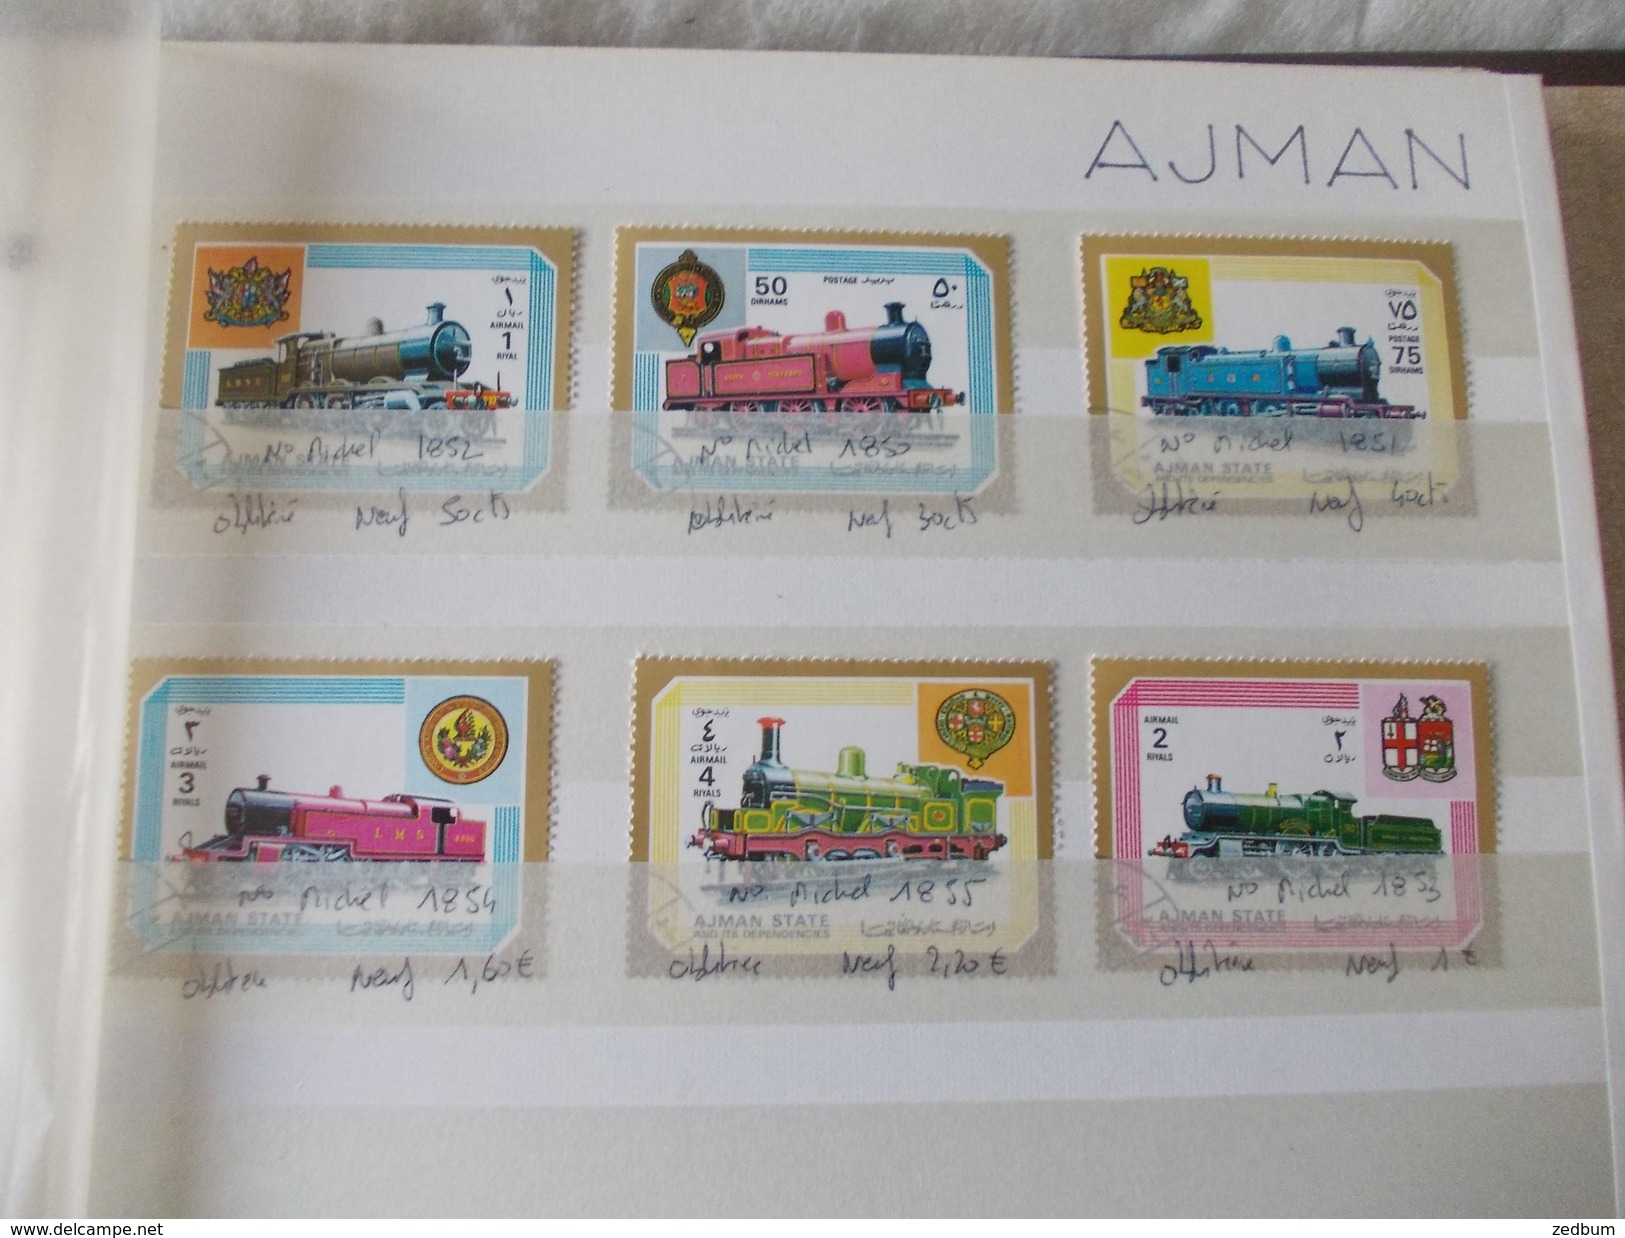 ALBUM 1 collection de timbres avec pour thème le chemin de fer train de tout pays valeur 338.70 &euro;